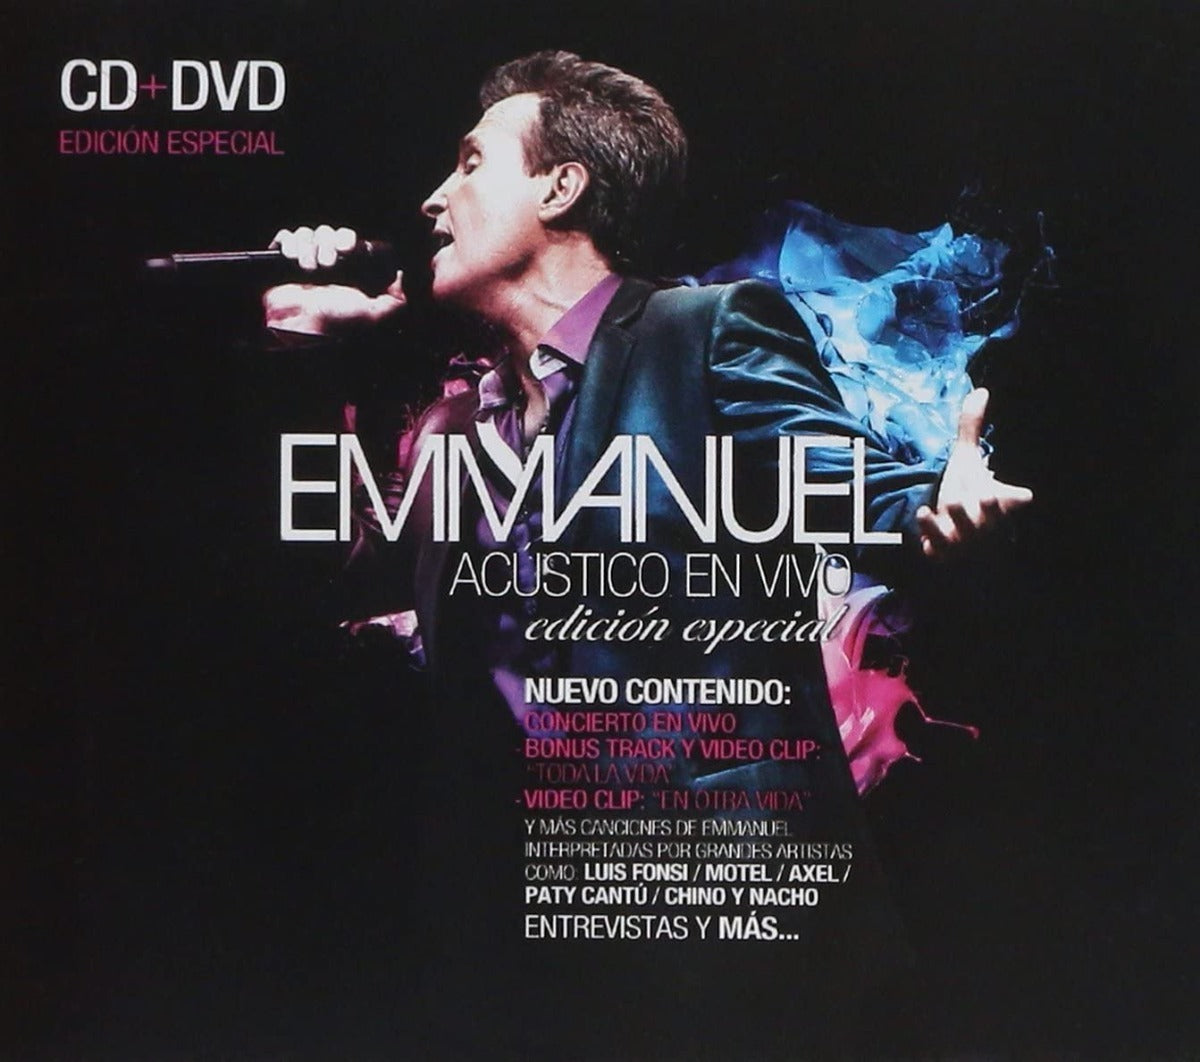 Emmanuel Acustico En Vivo / Edicion Especial Cd + Dvd